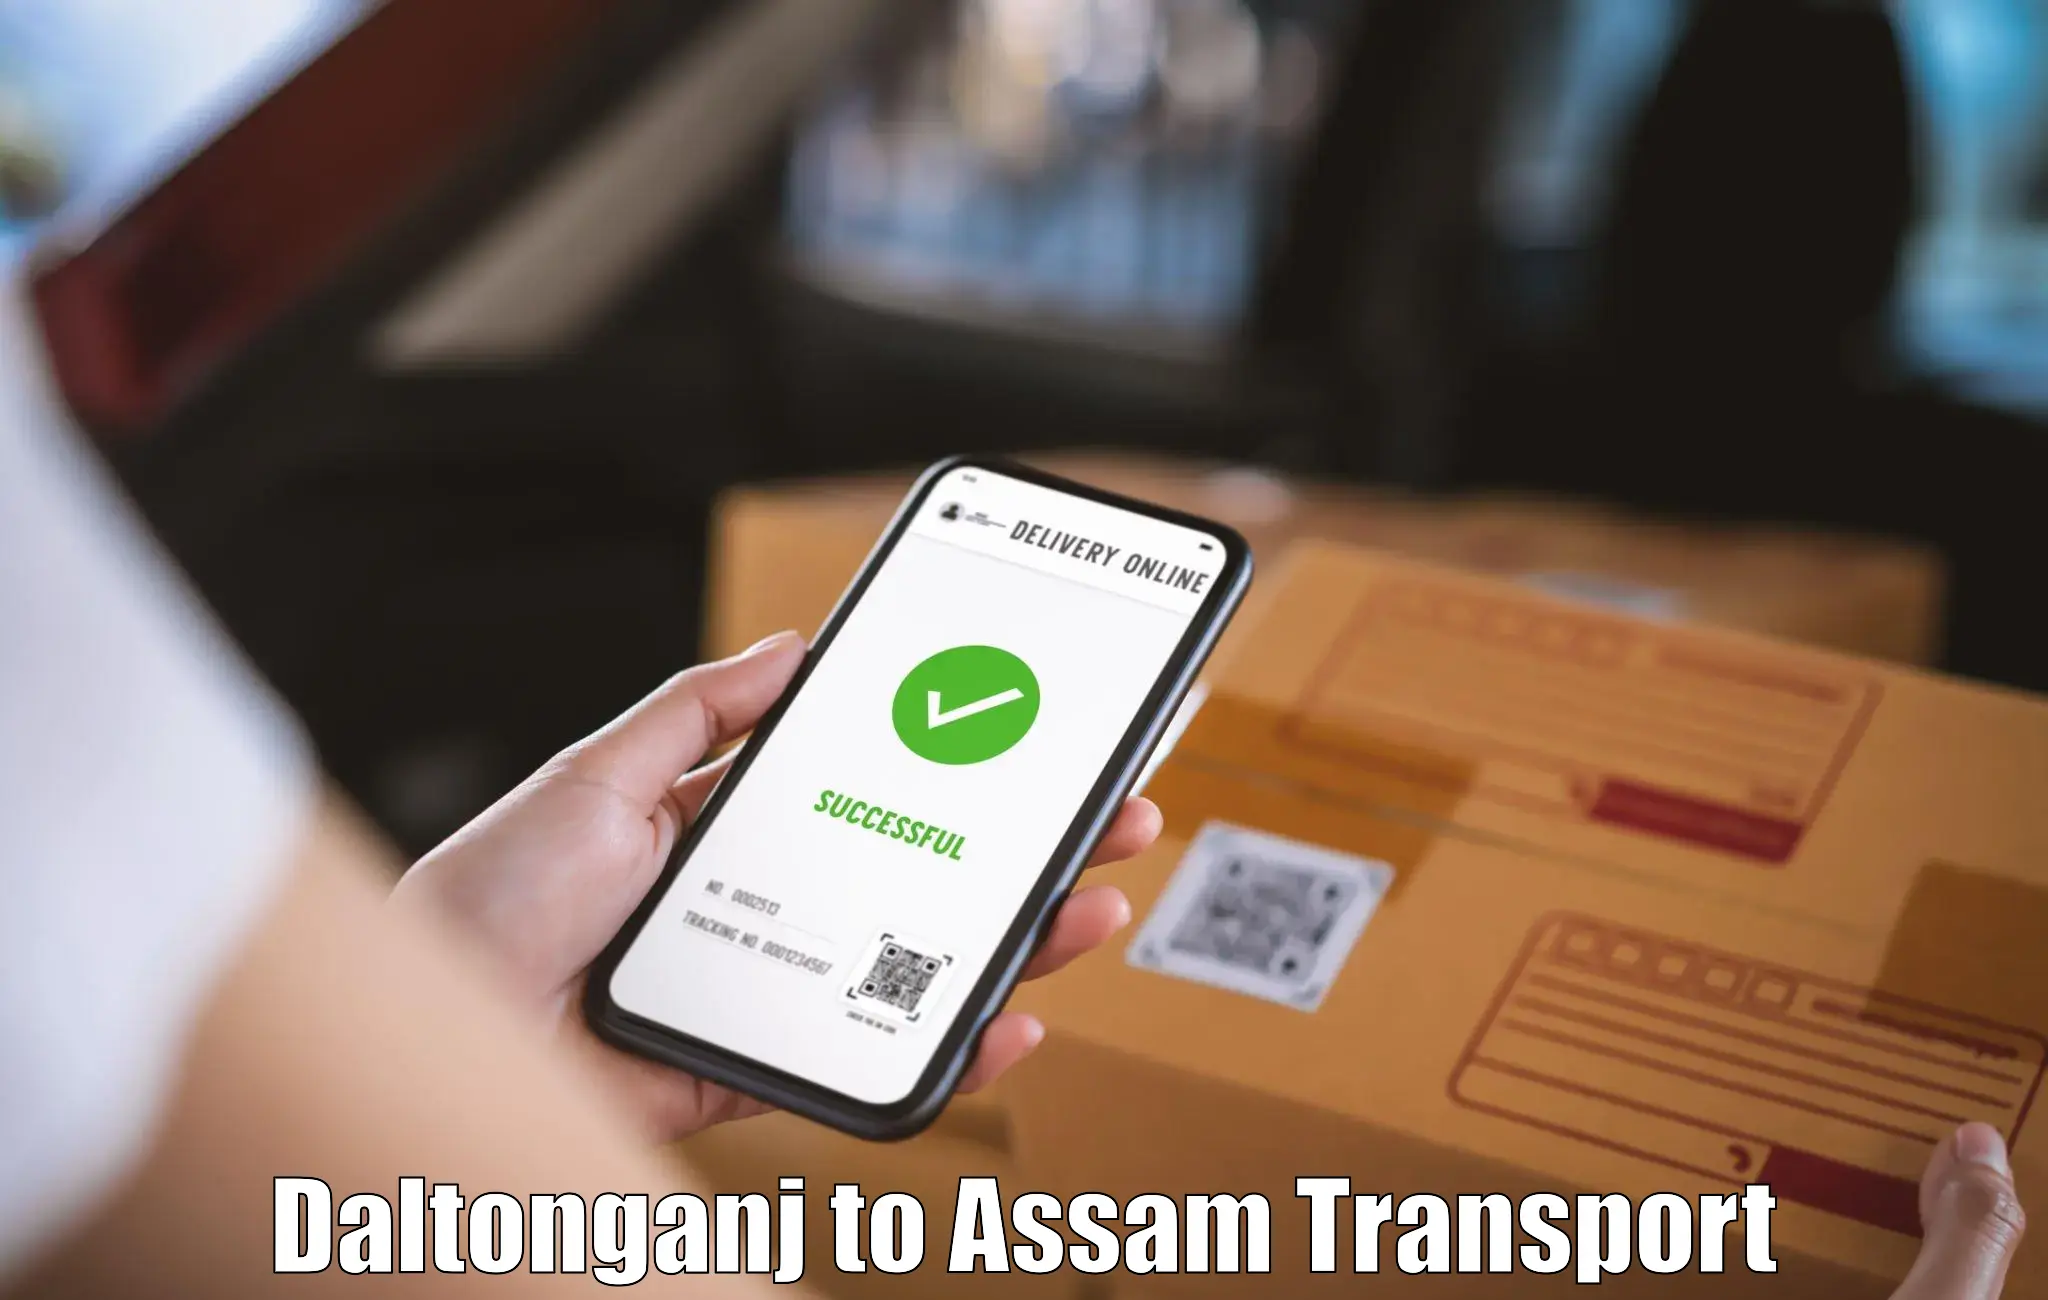 Online transport booking Daltonganj to Biswanath